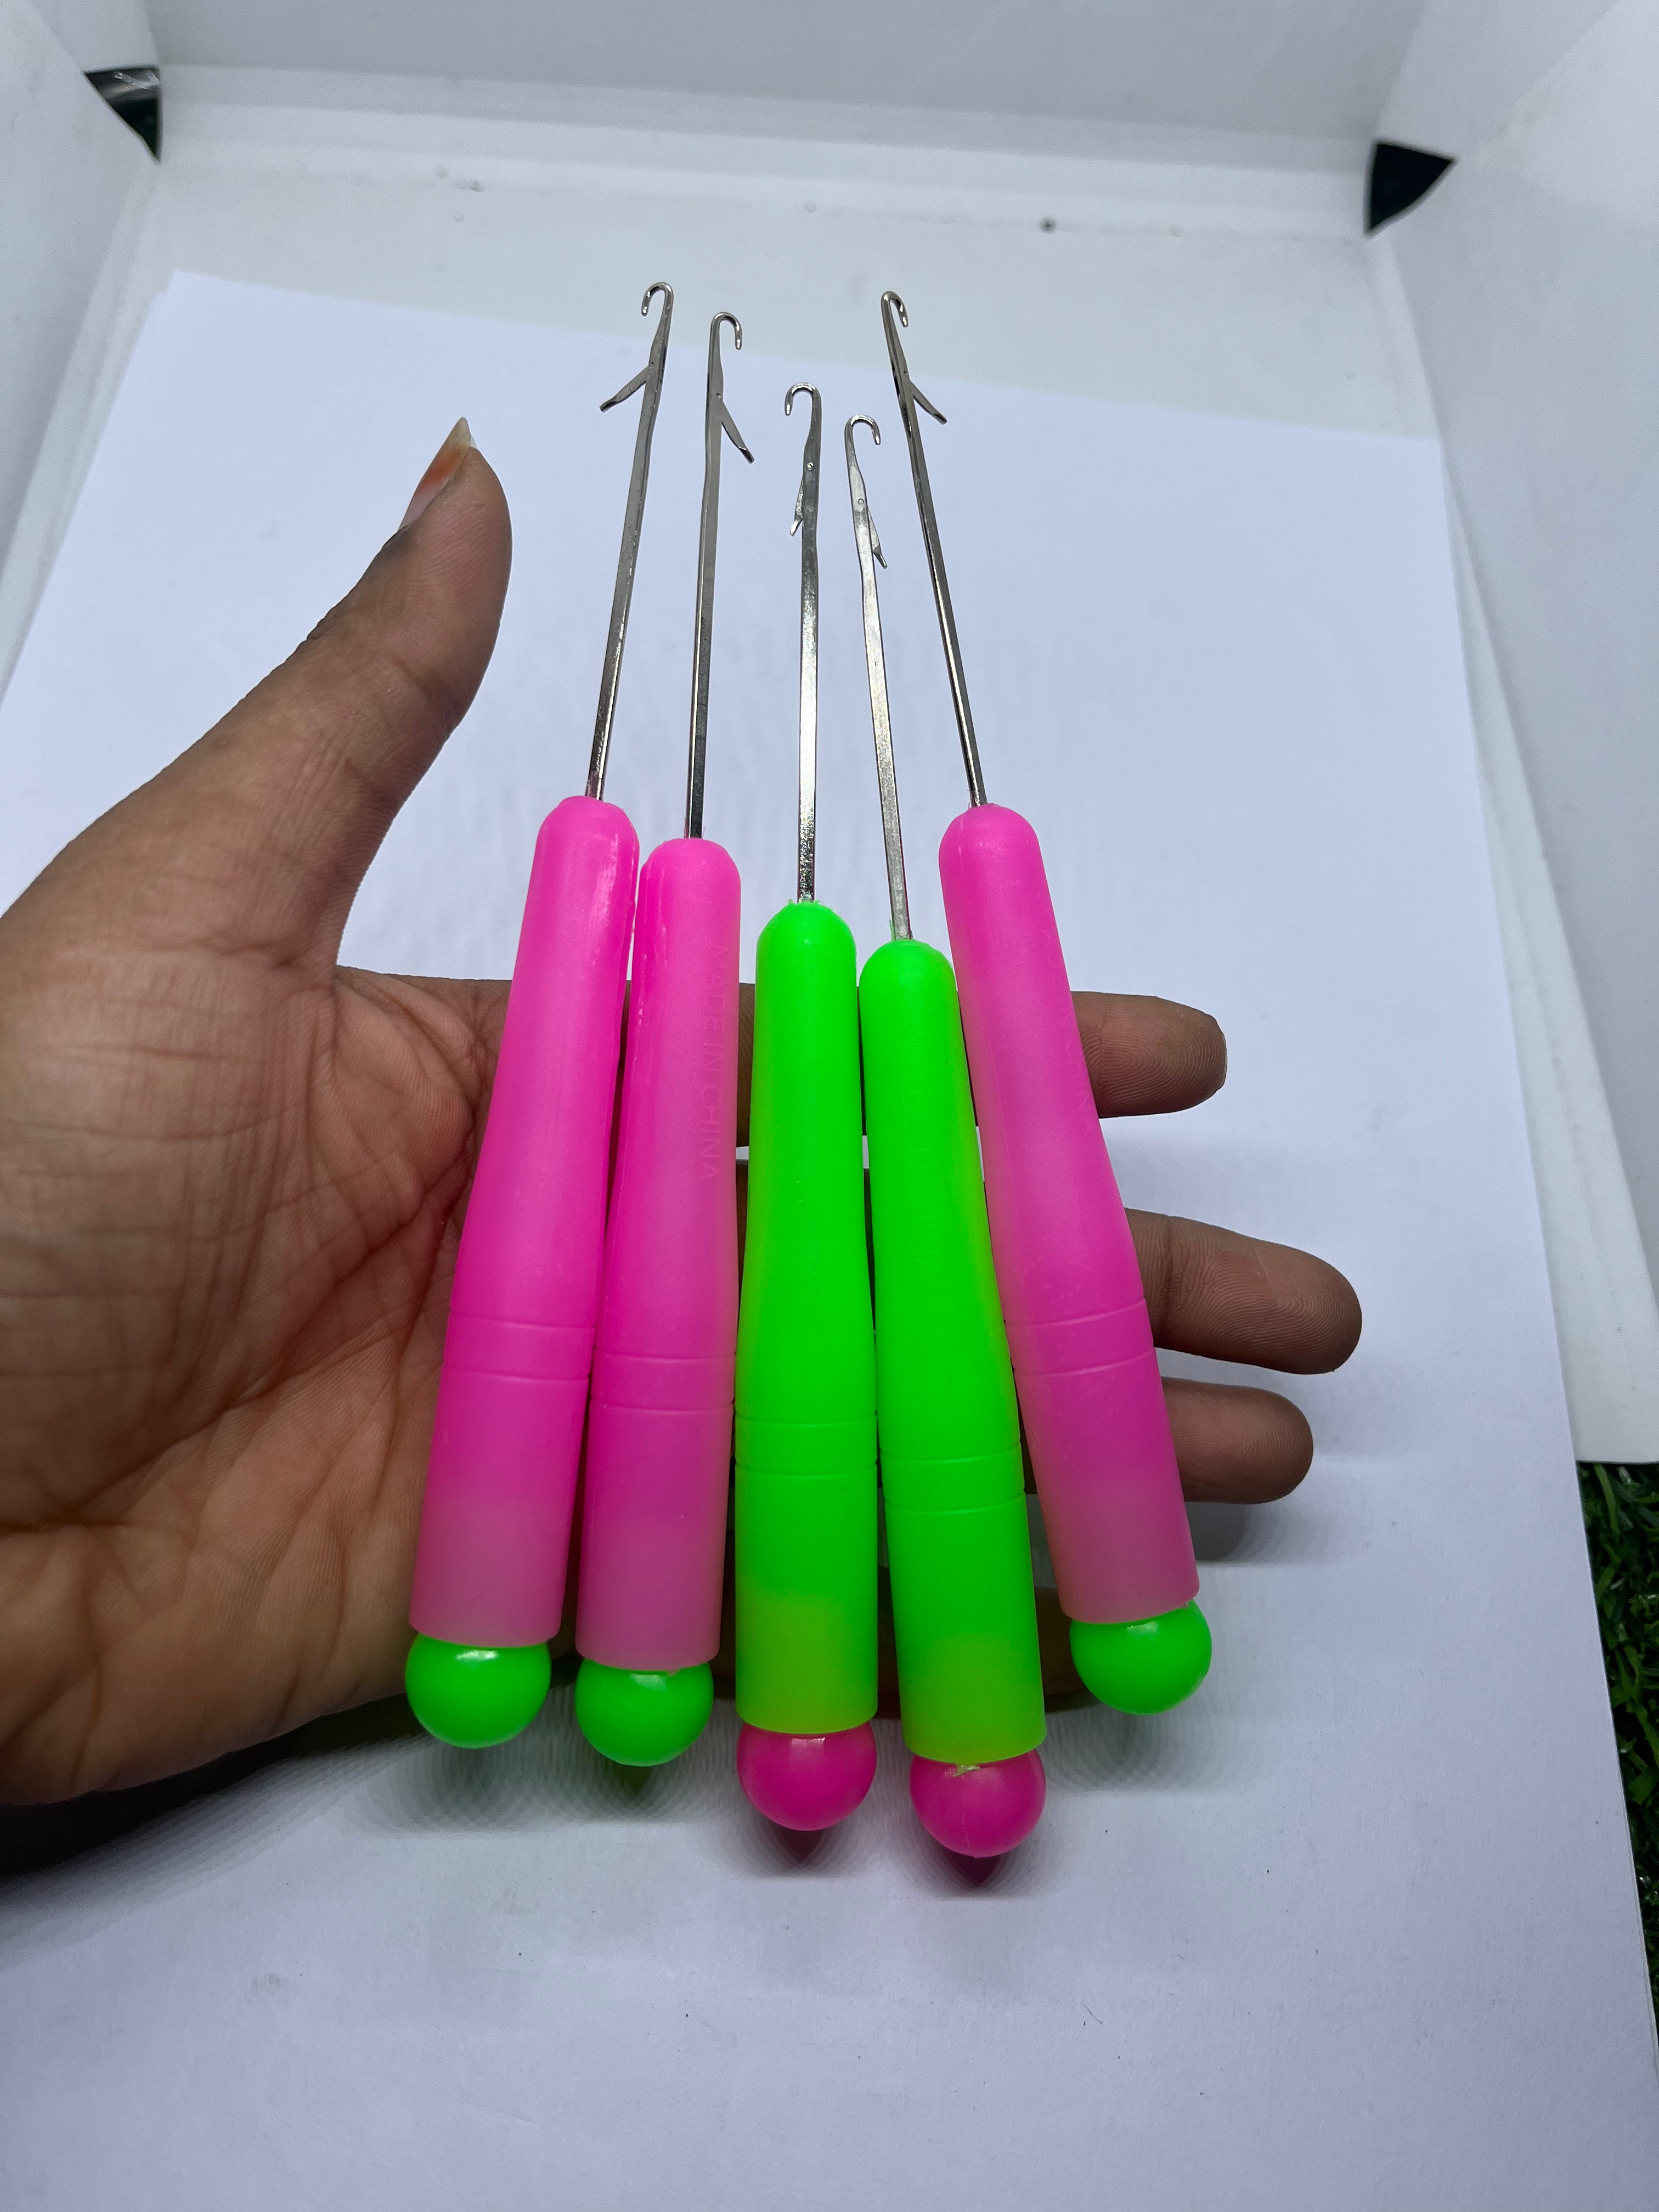 Plantinum tone plastic handle needles